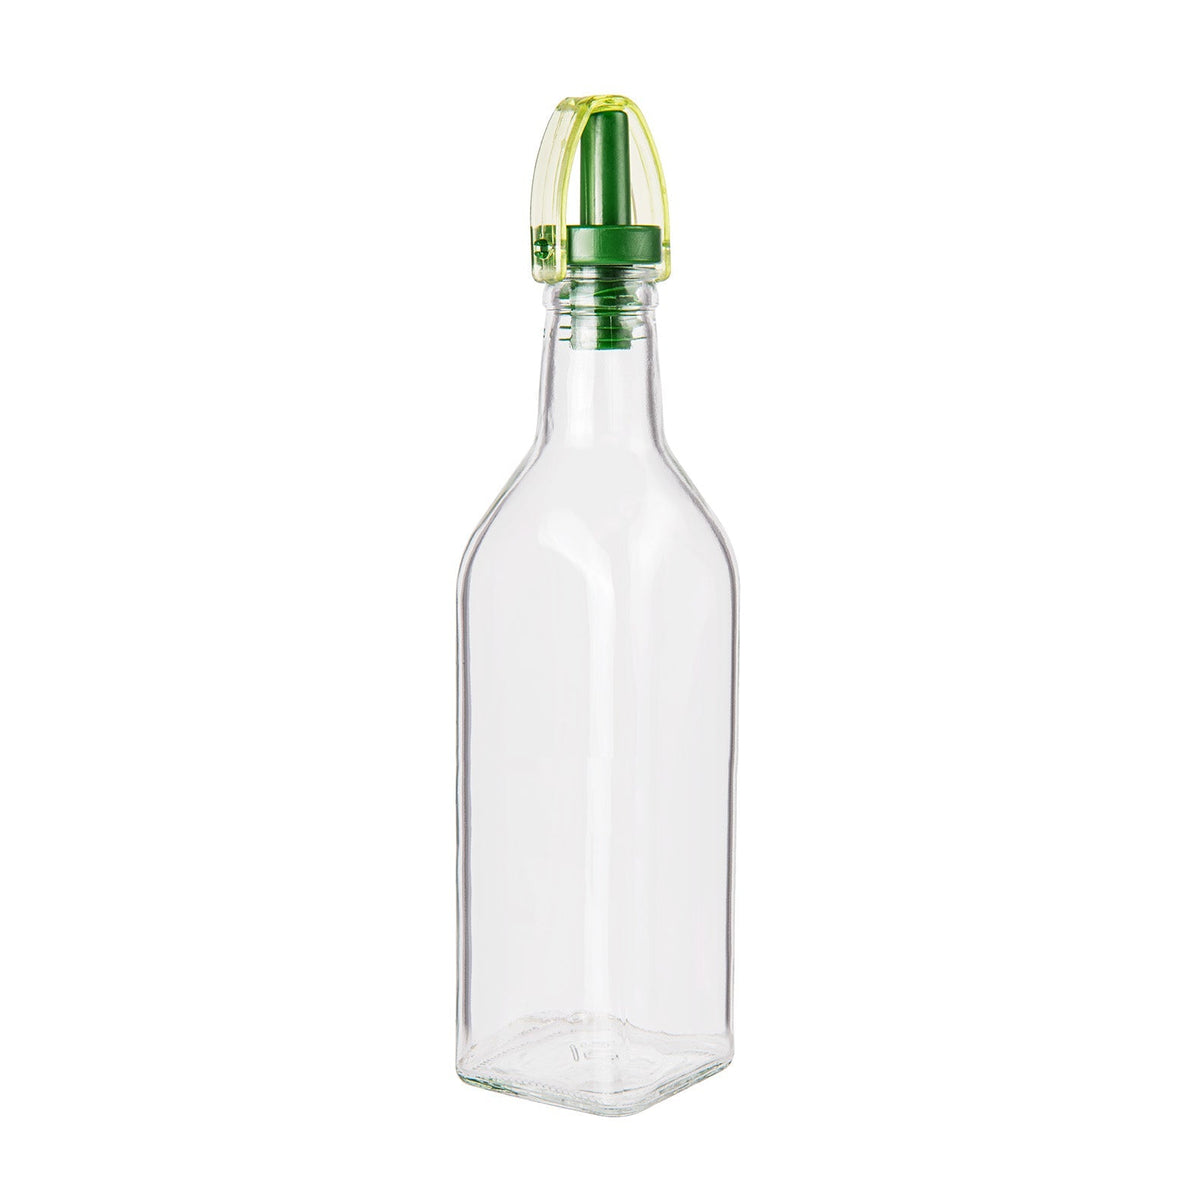 Sticlă de sticlă cu ulei sau distribuitor de oțet - 250 ml